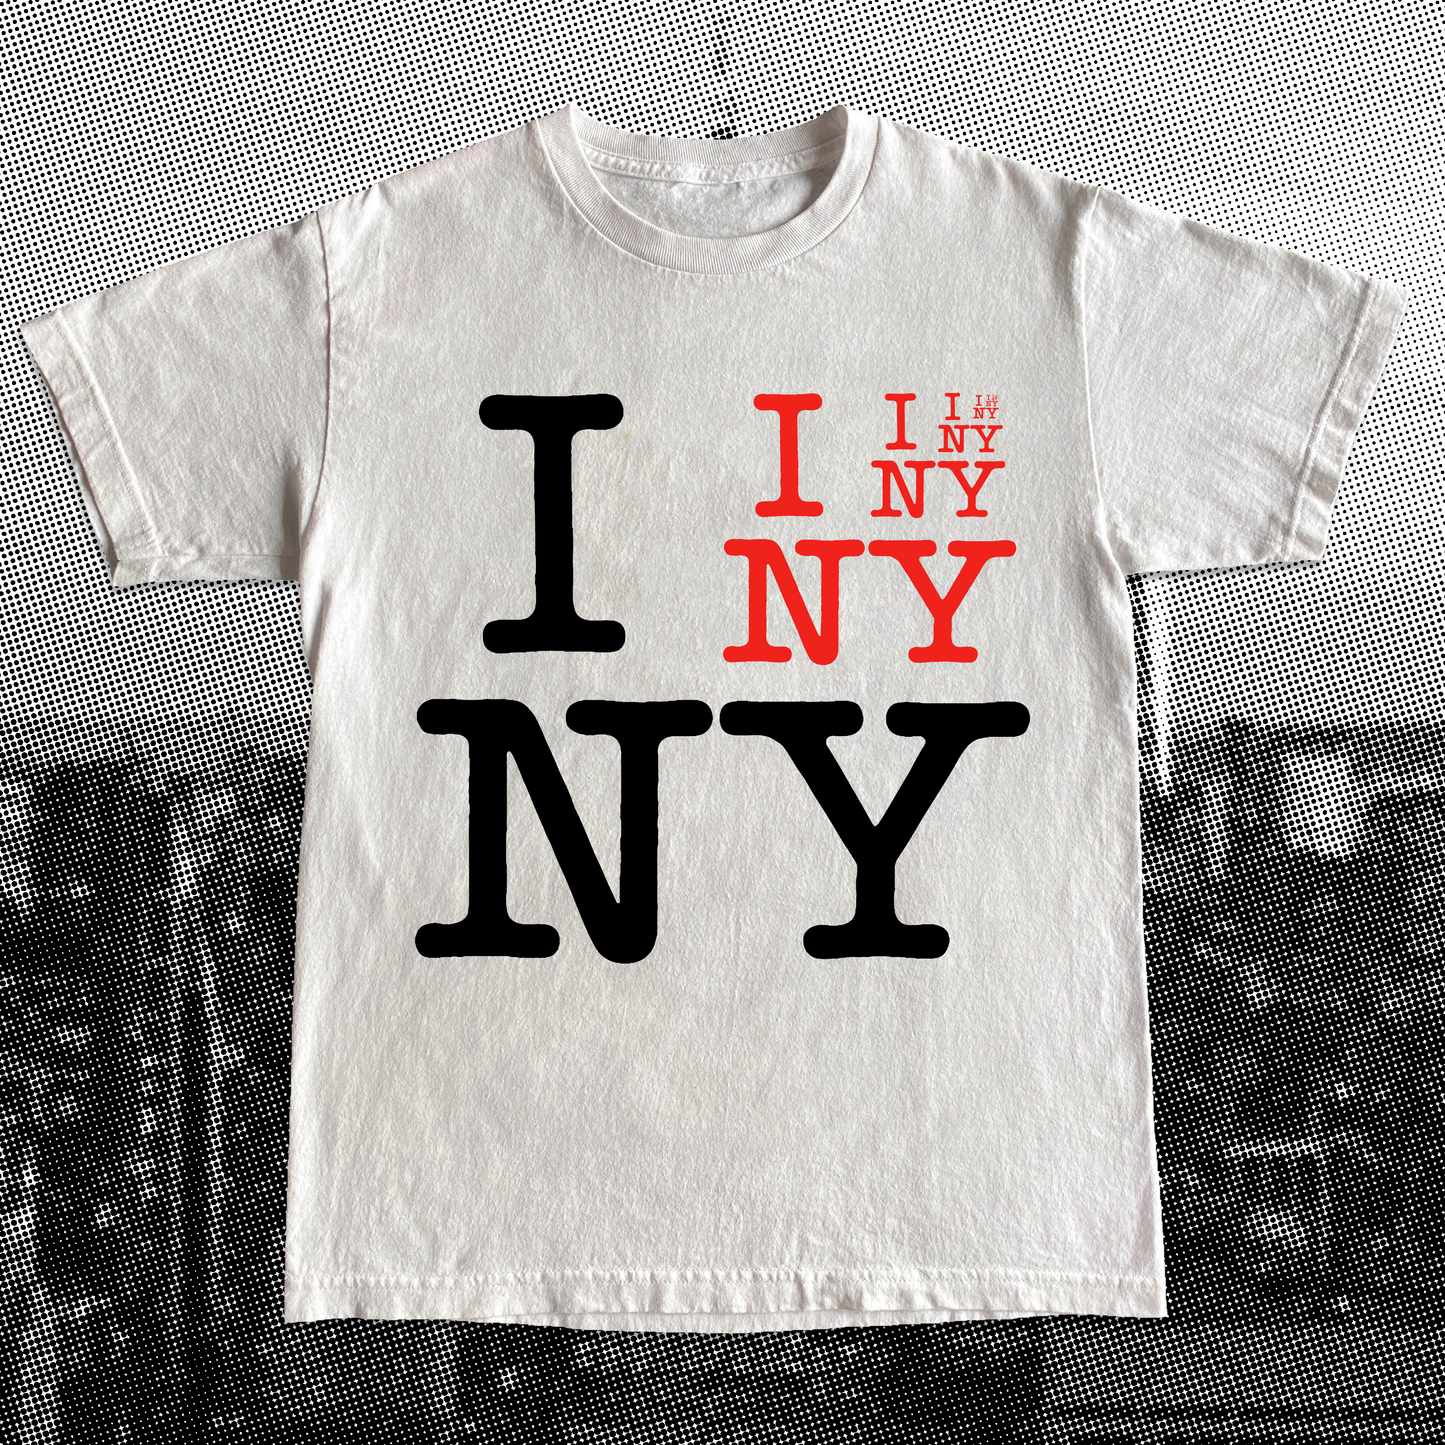 "I I I NY NY NY" Tee